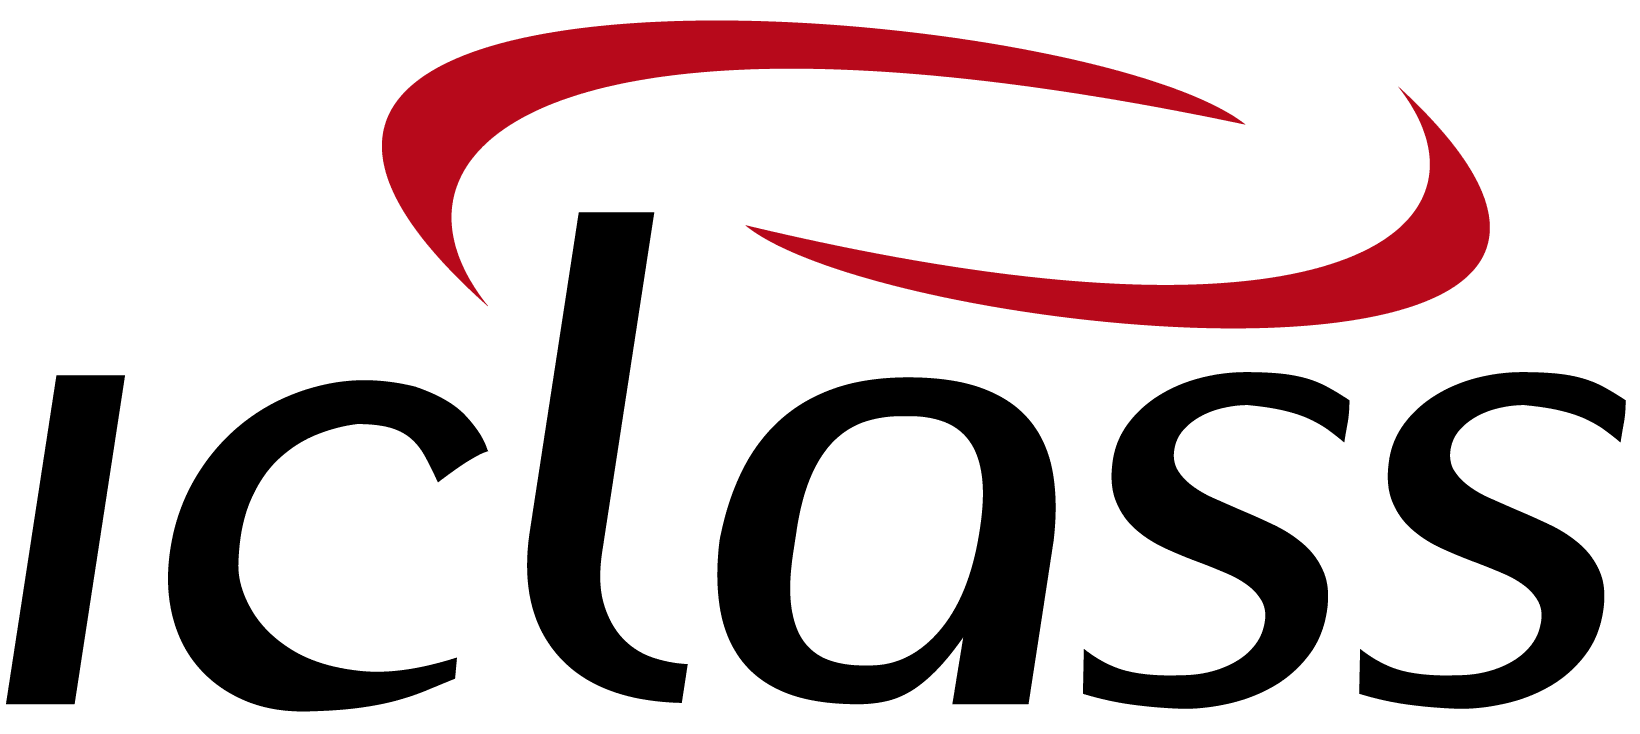 logo IClass Software de Ordem de Serviço Online Integração com Sistemas